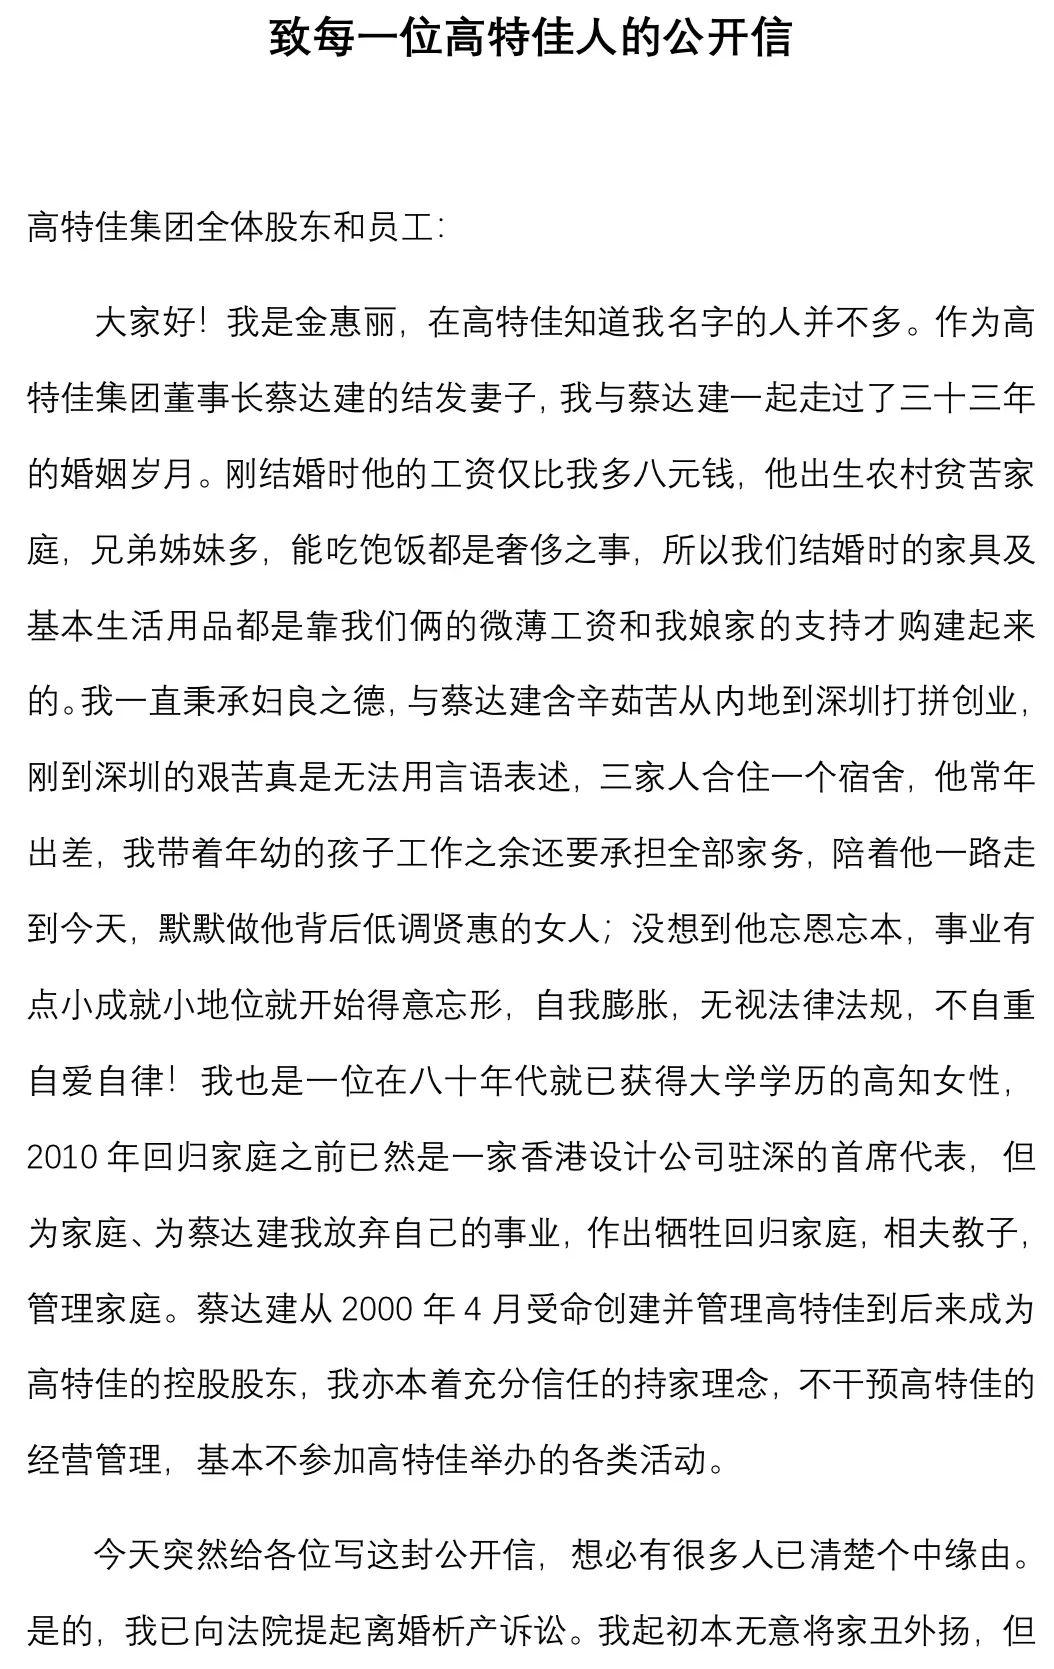 9月8日,投资公司高特佳集团董事长蔡达建妻子金惠丽发表公开信,控诉